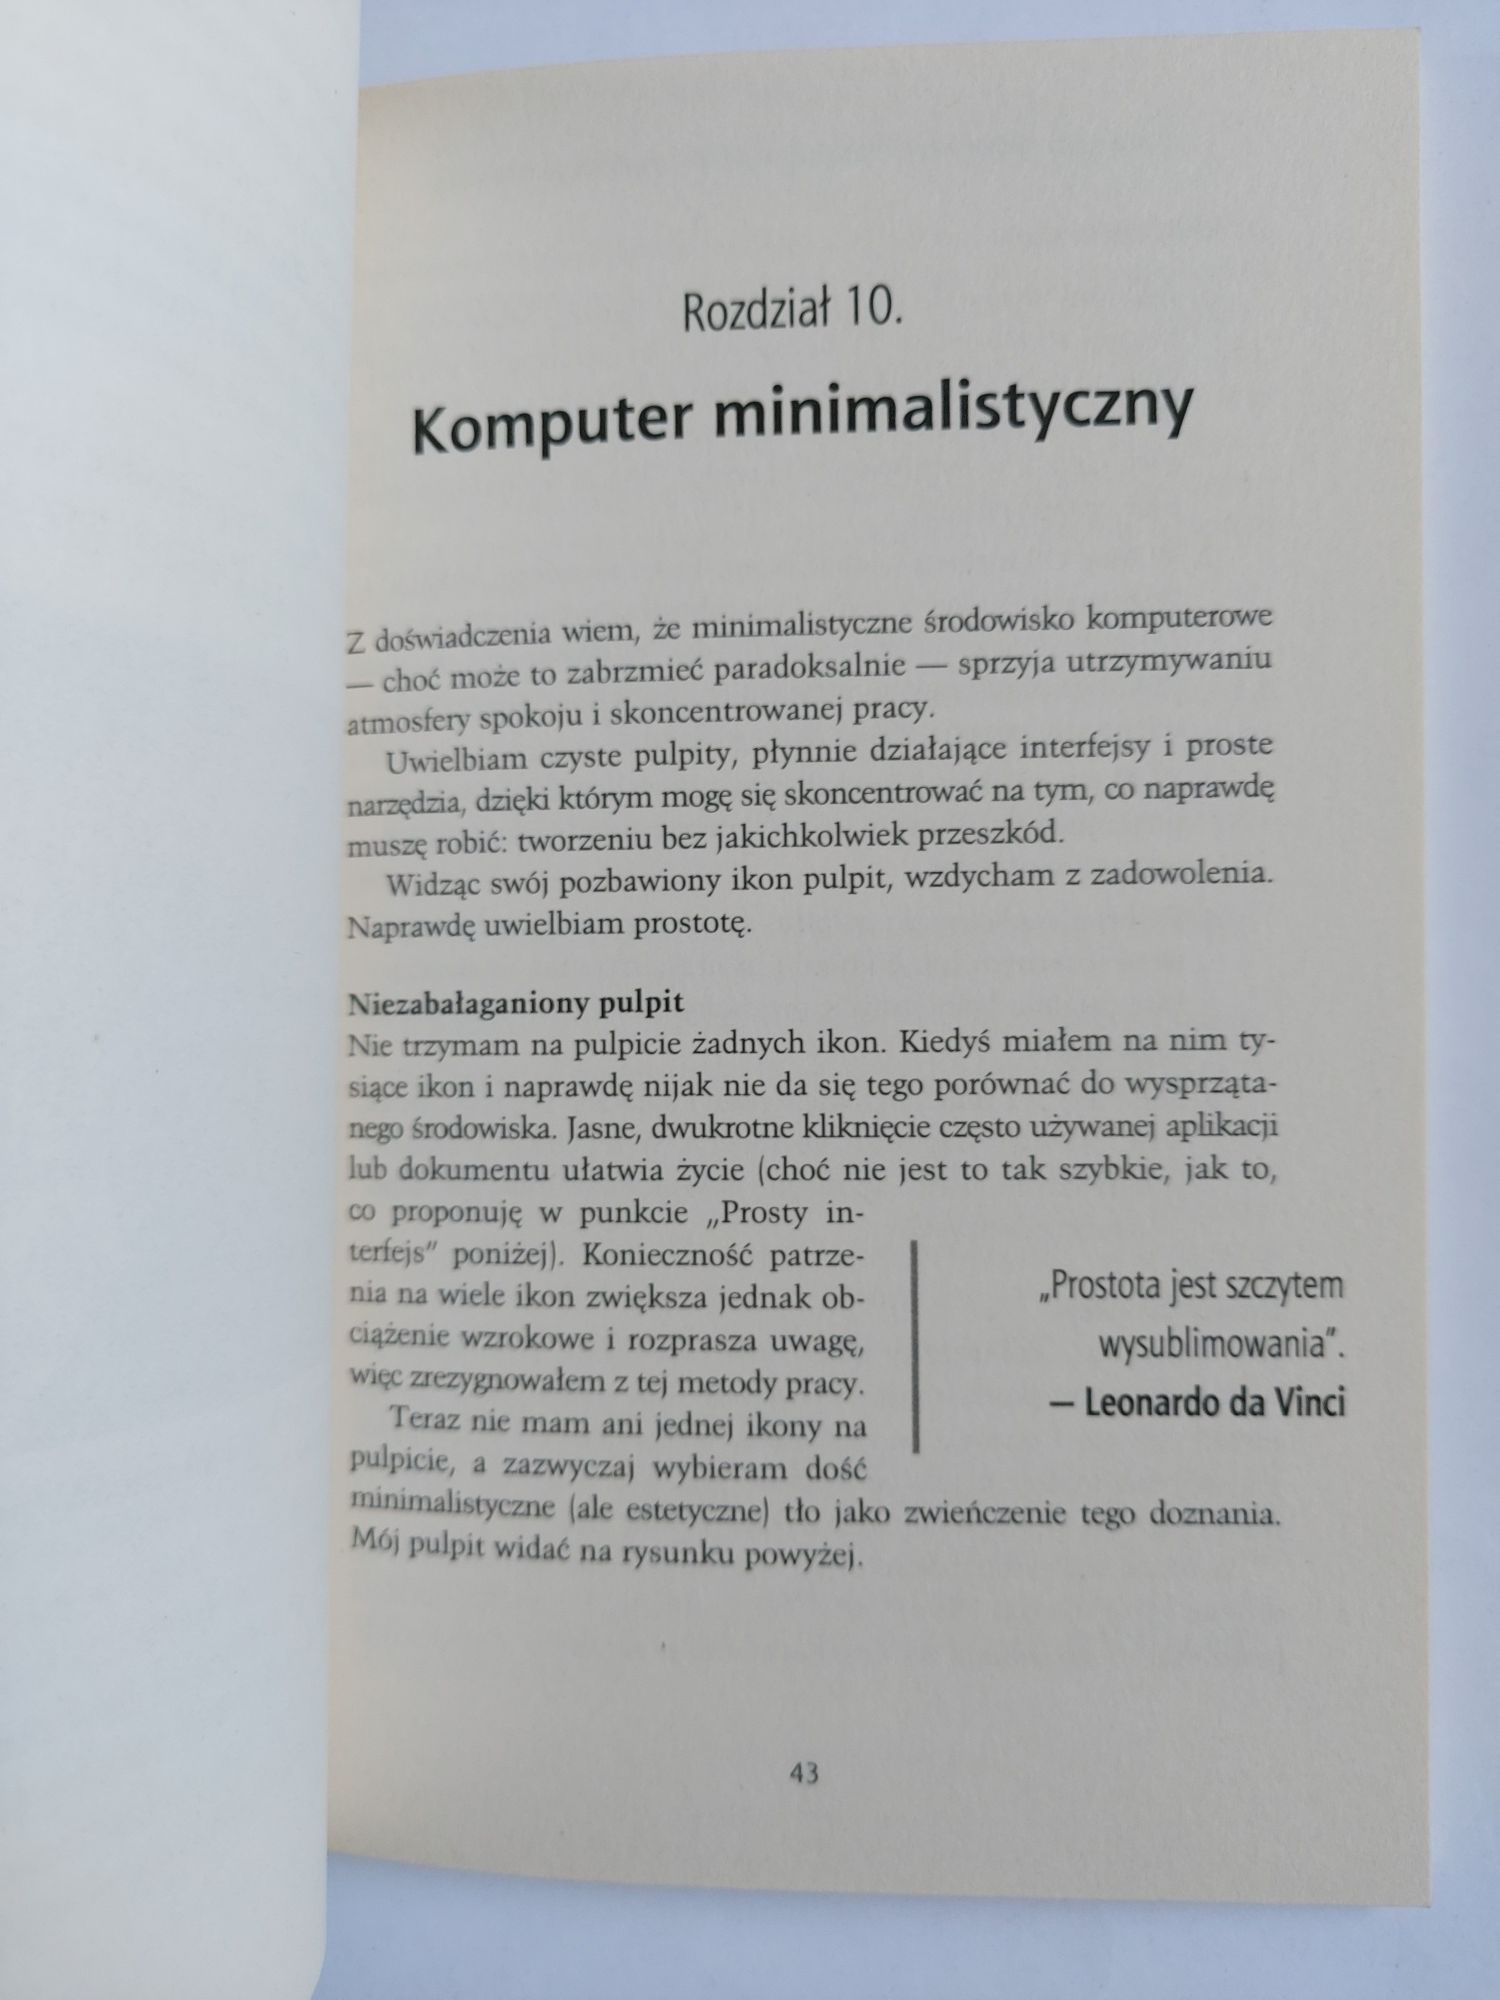 Książeczka minimalisty - Leo Babauta